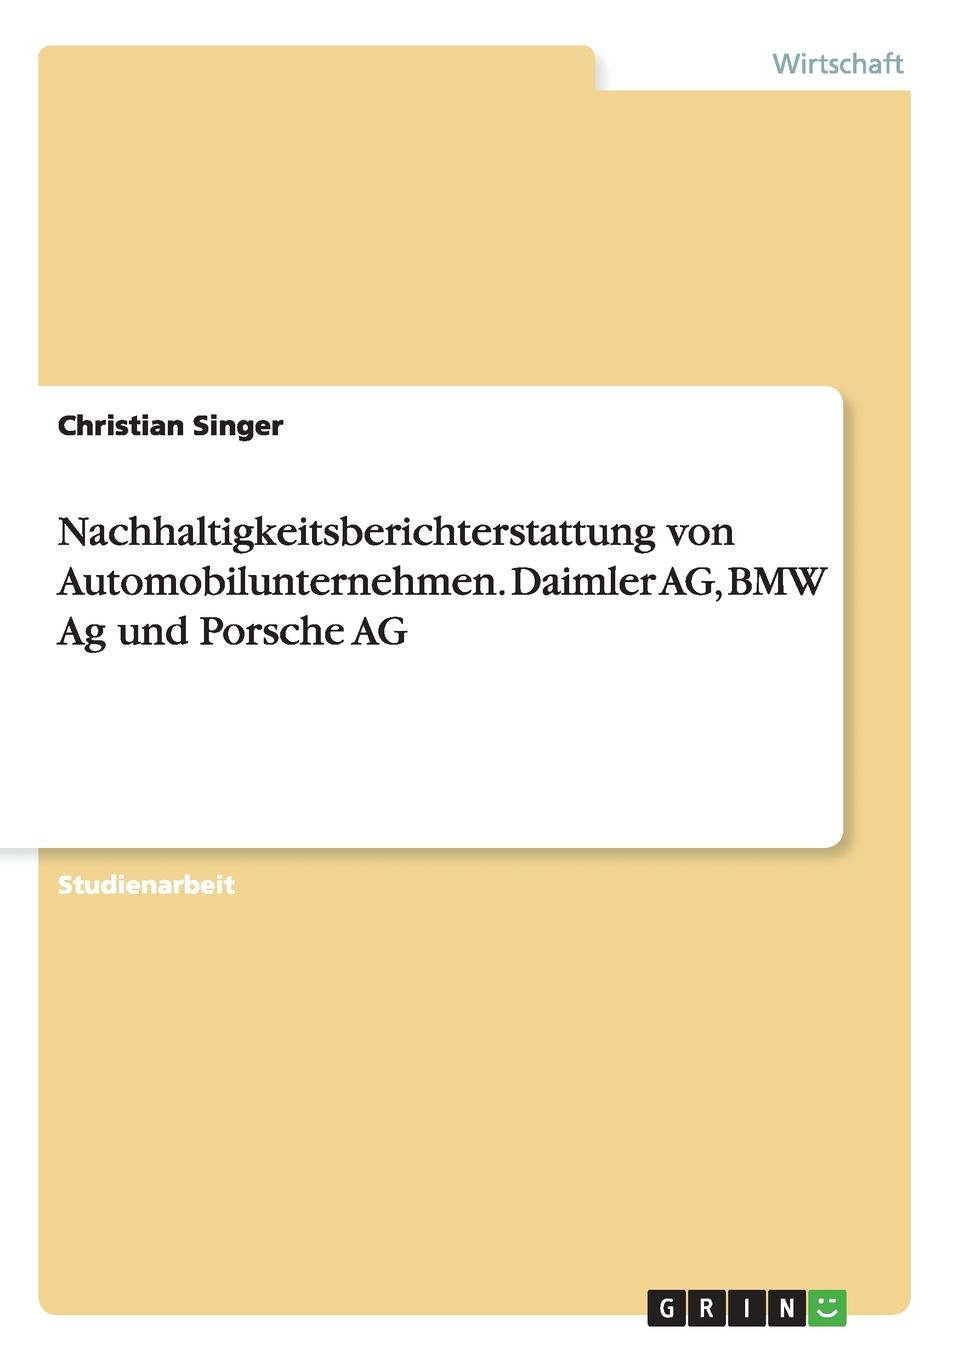 Nachhaltigkeitsberichterstattung von Automobilunternehmen. Daimler AG, BMW Ag und Porsche AG